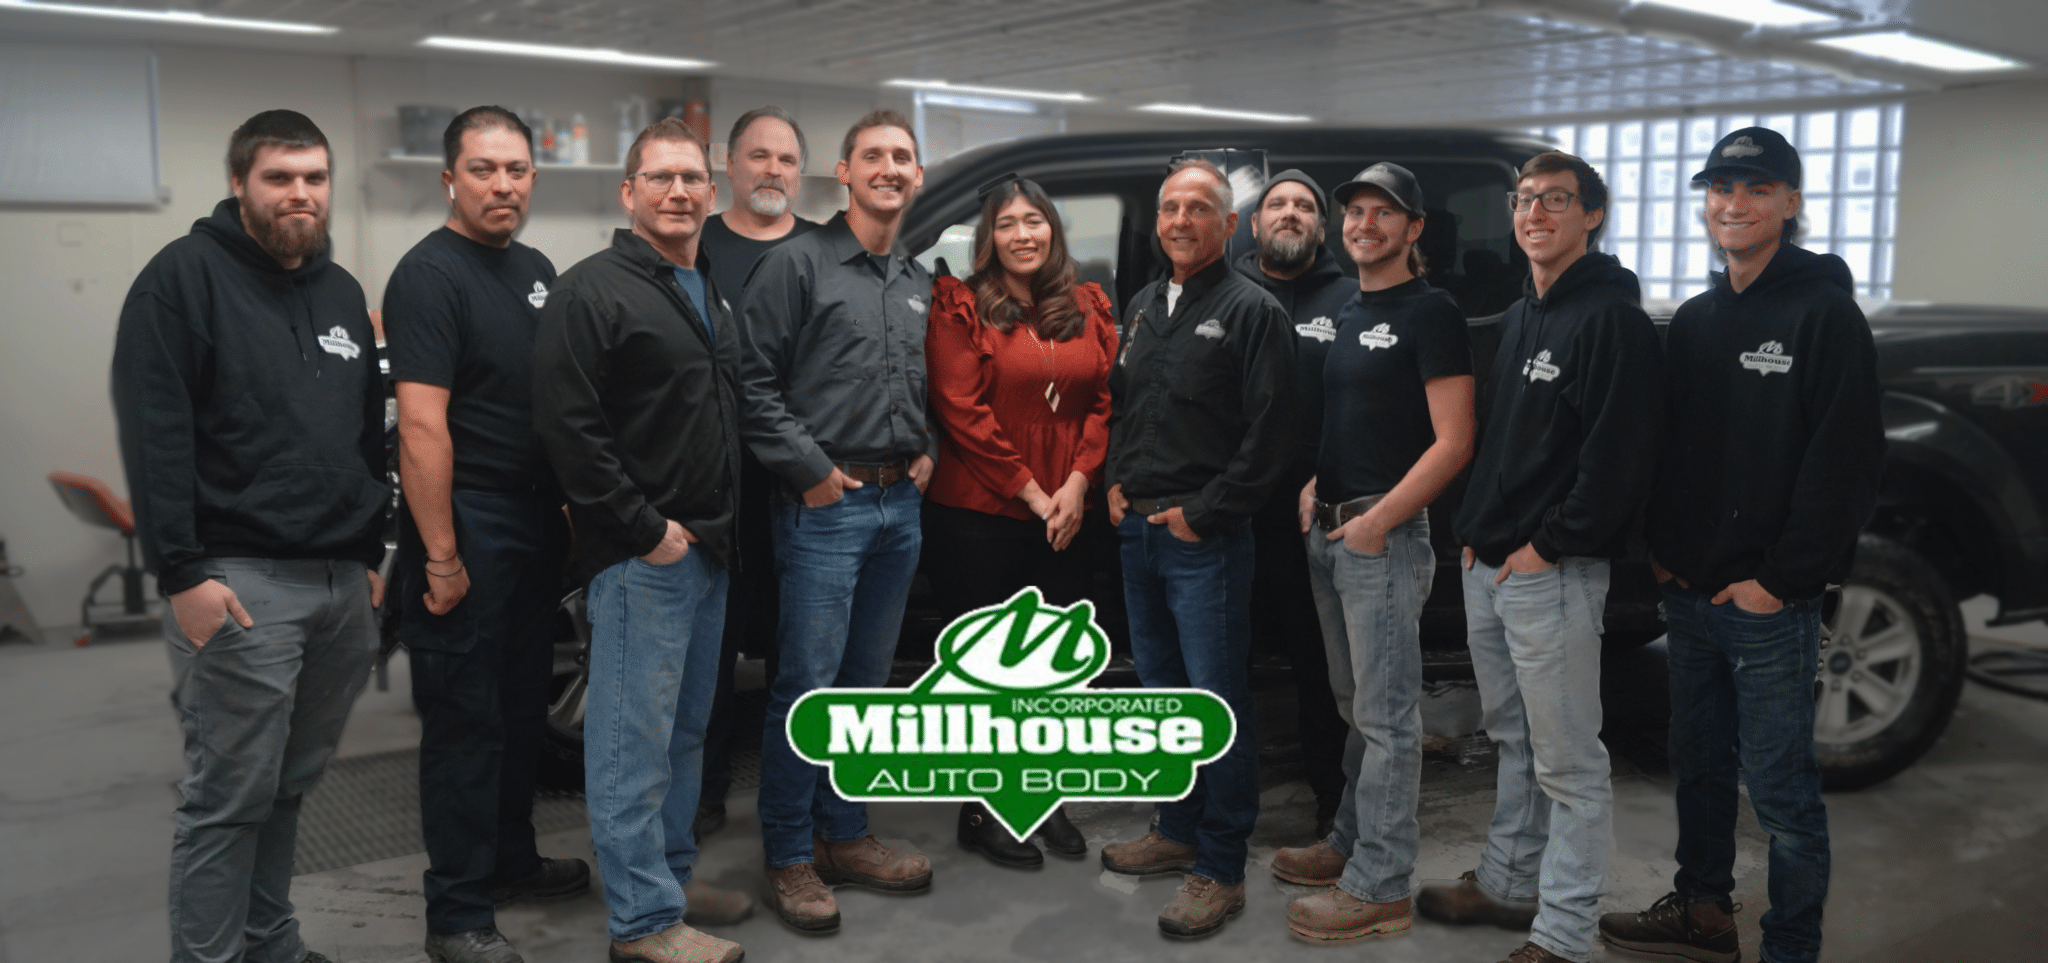 millhouse auto body, collision repair in kenosha, about millhouse auto body